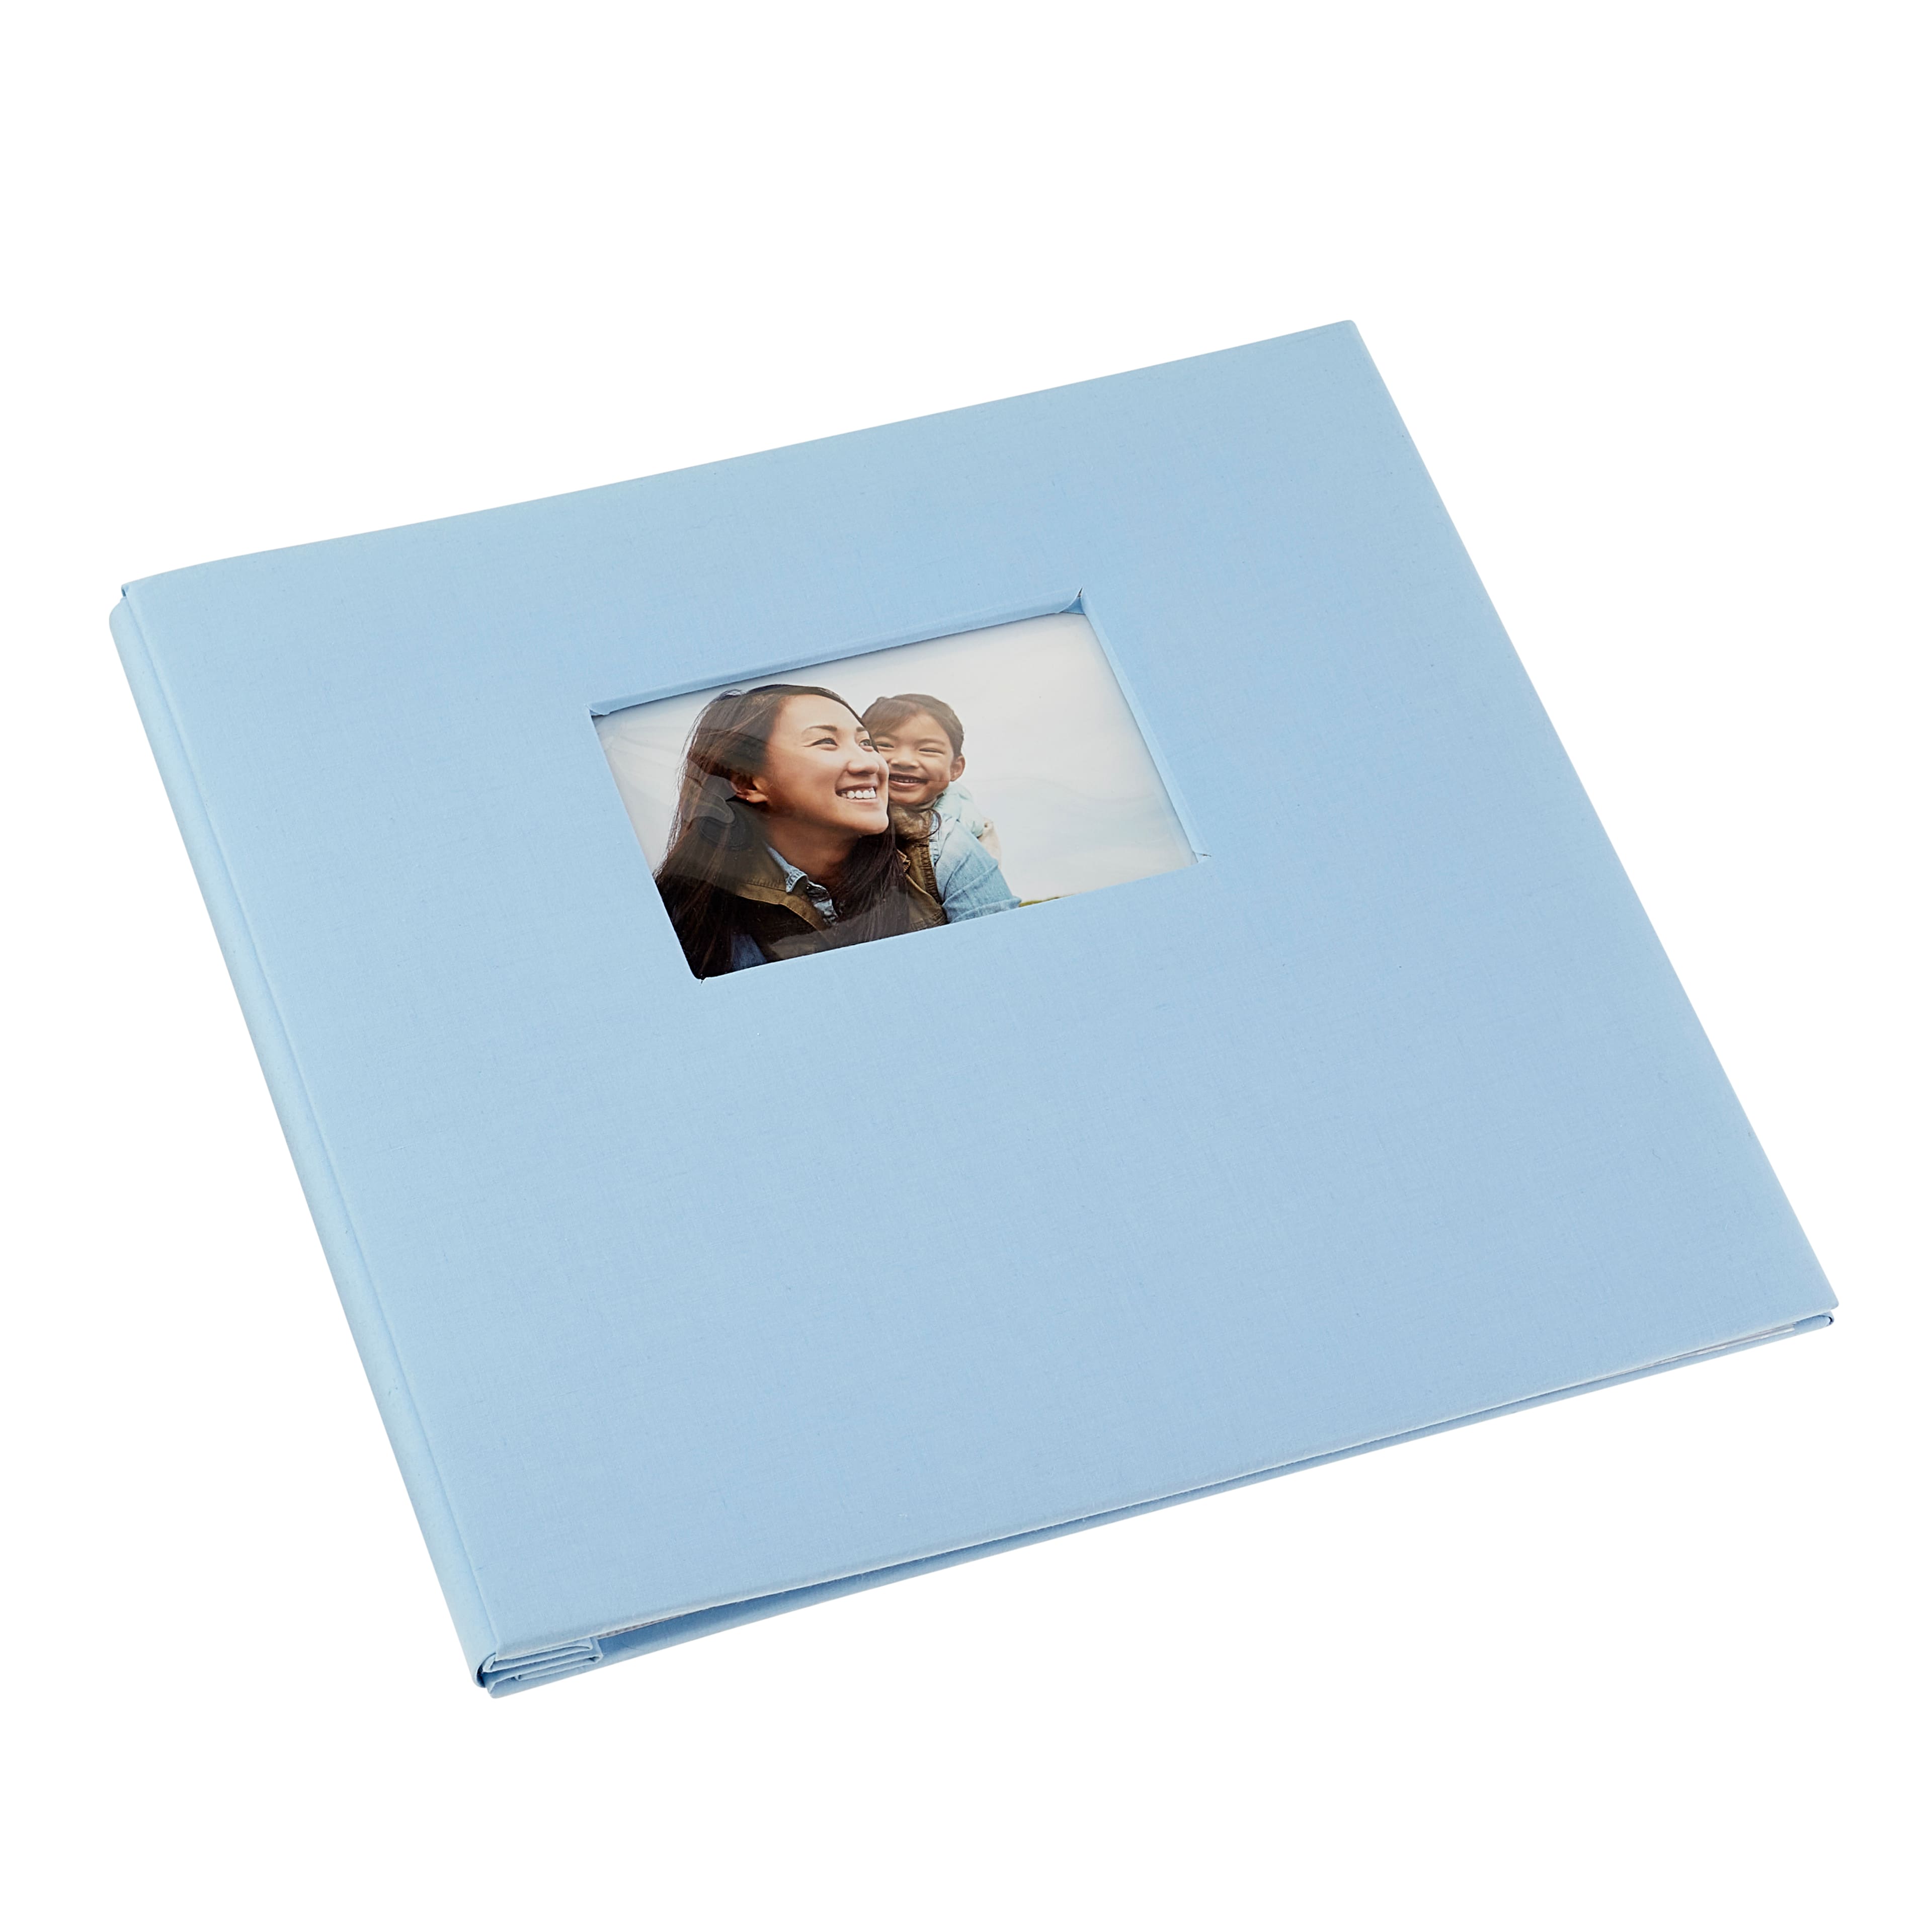 11x10 6 Inch Self Adhesive Photo Album Sticky 3x5 4x6 5x7 6x8 8x10 8.5x11  Album